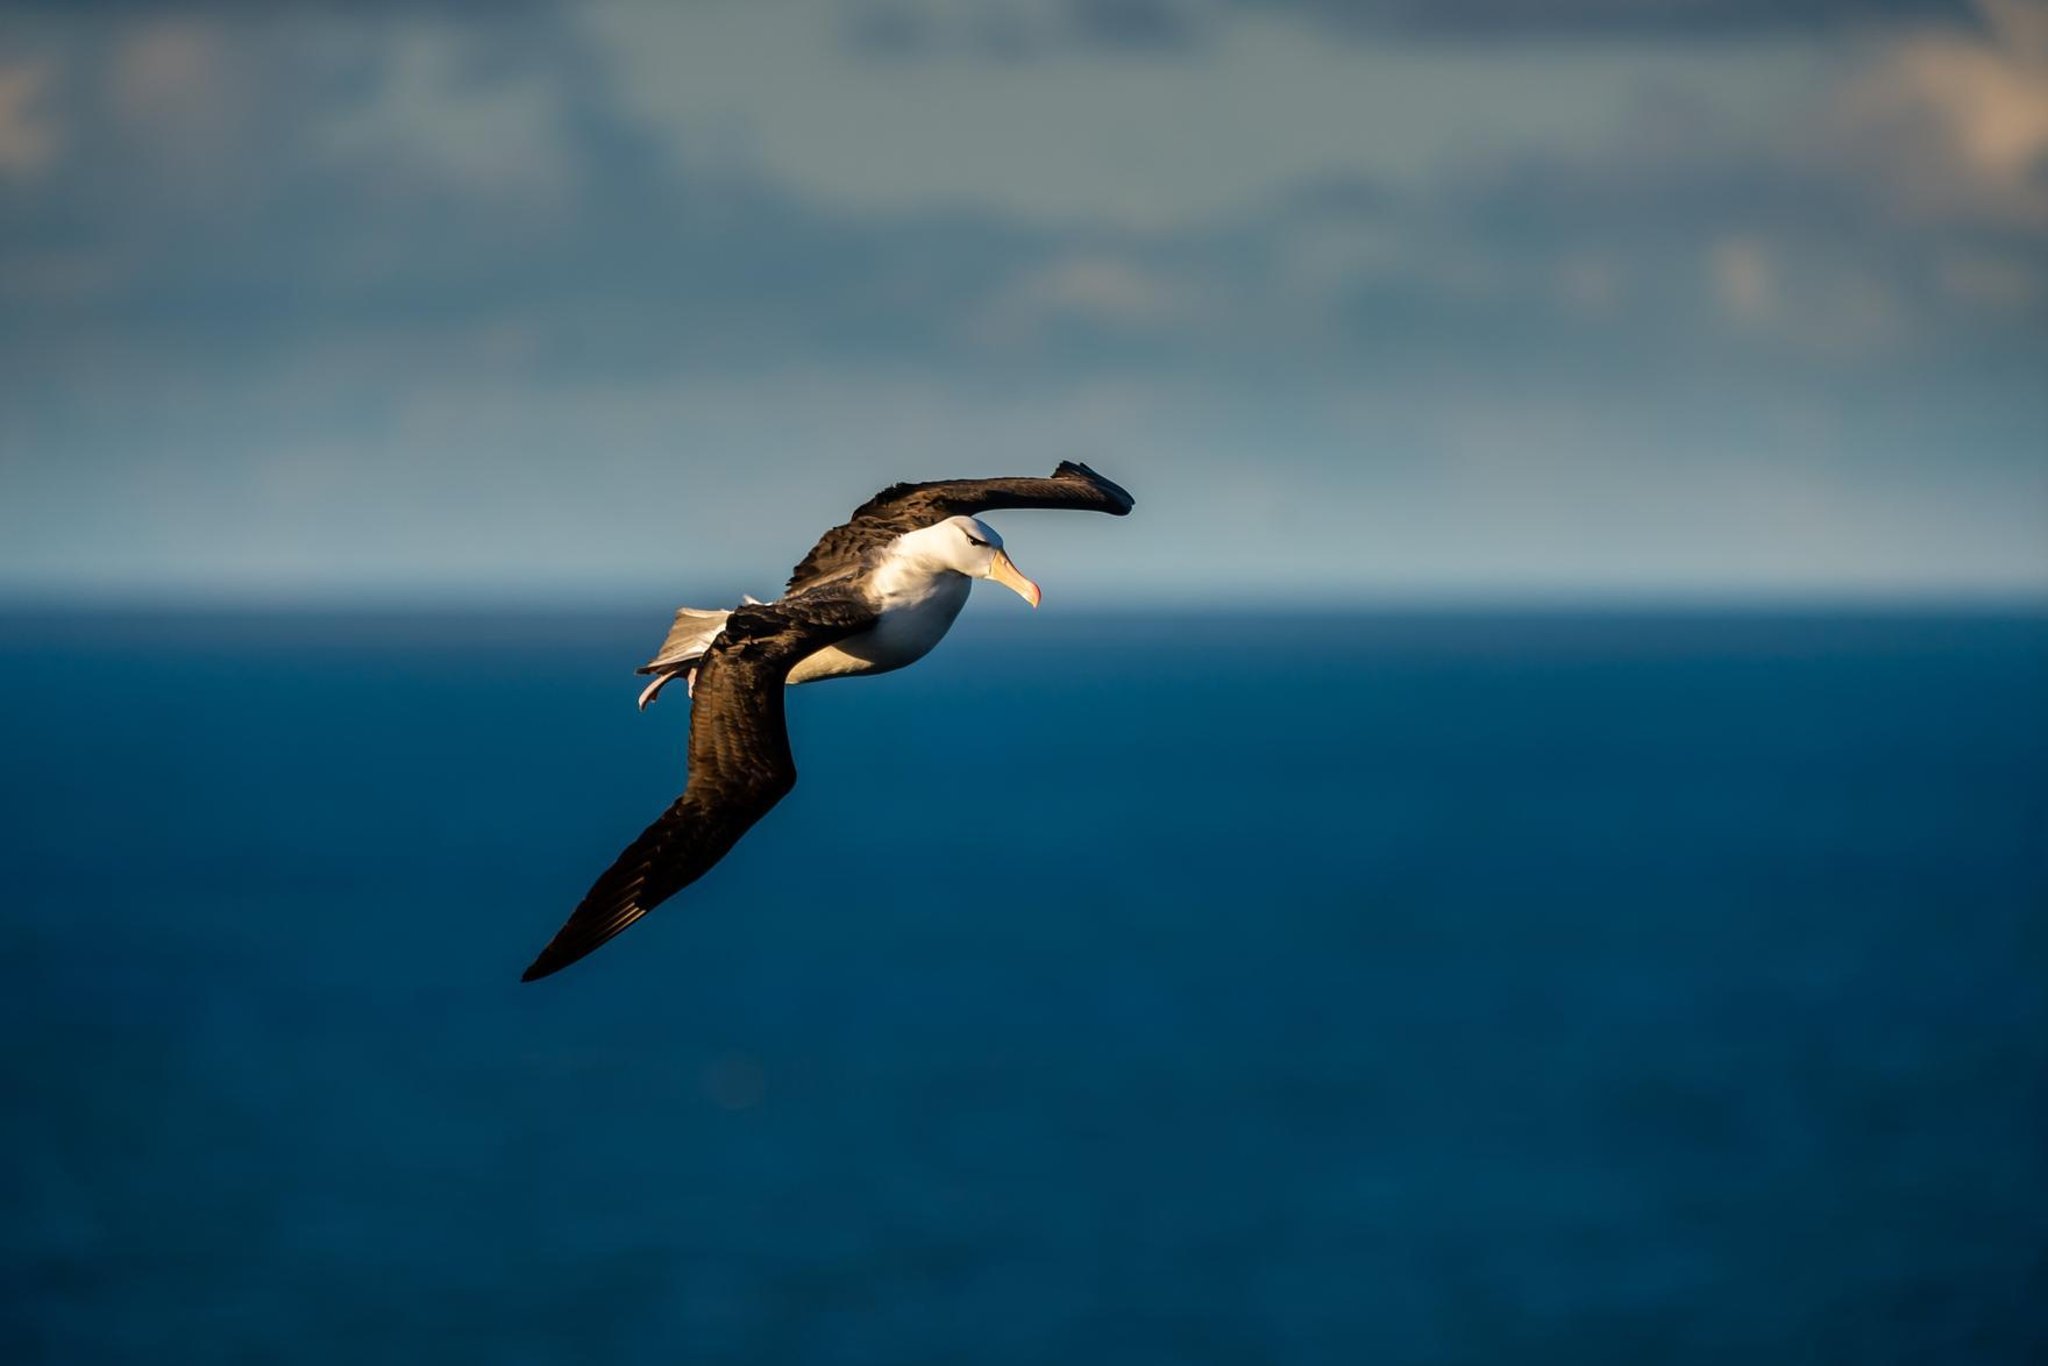 Schwarzbrauner Albatros: Fantastische Fotos zeigen seltene Besucher im vollen Flug an den RSPB Bempton Cliffs